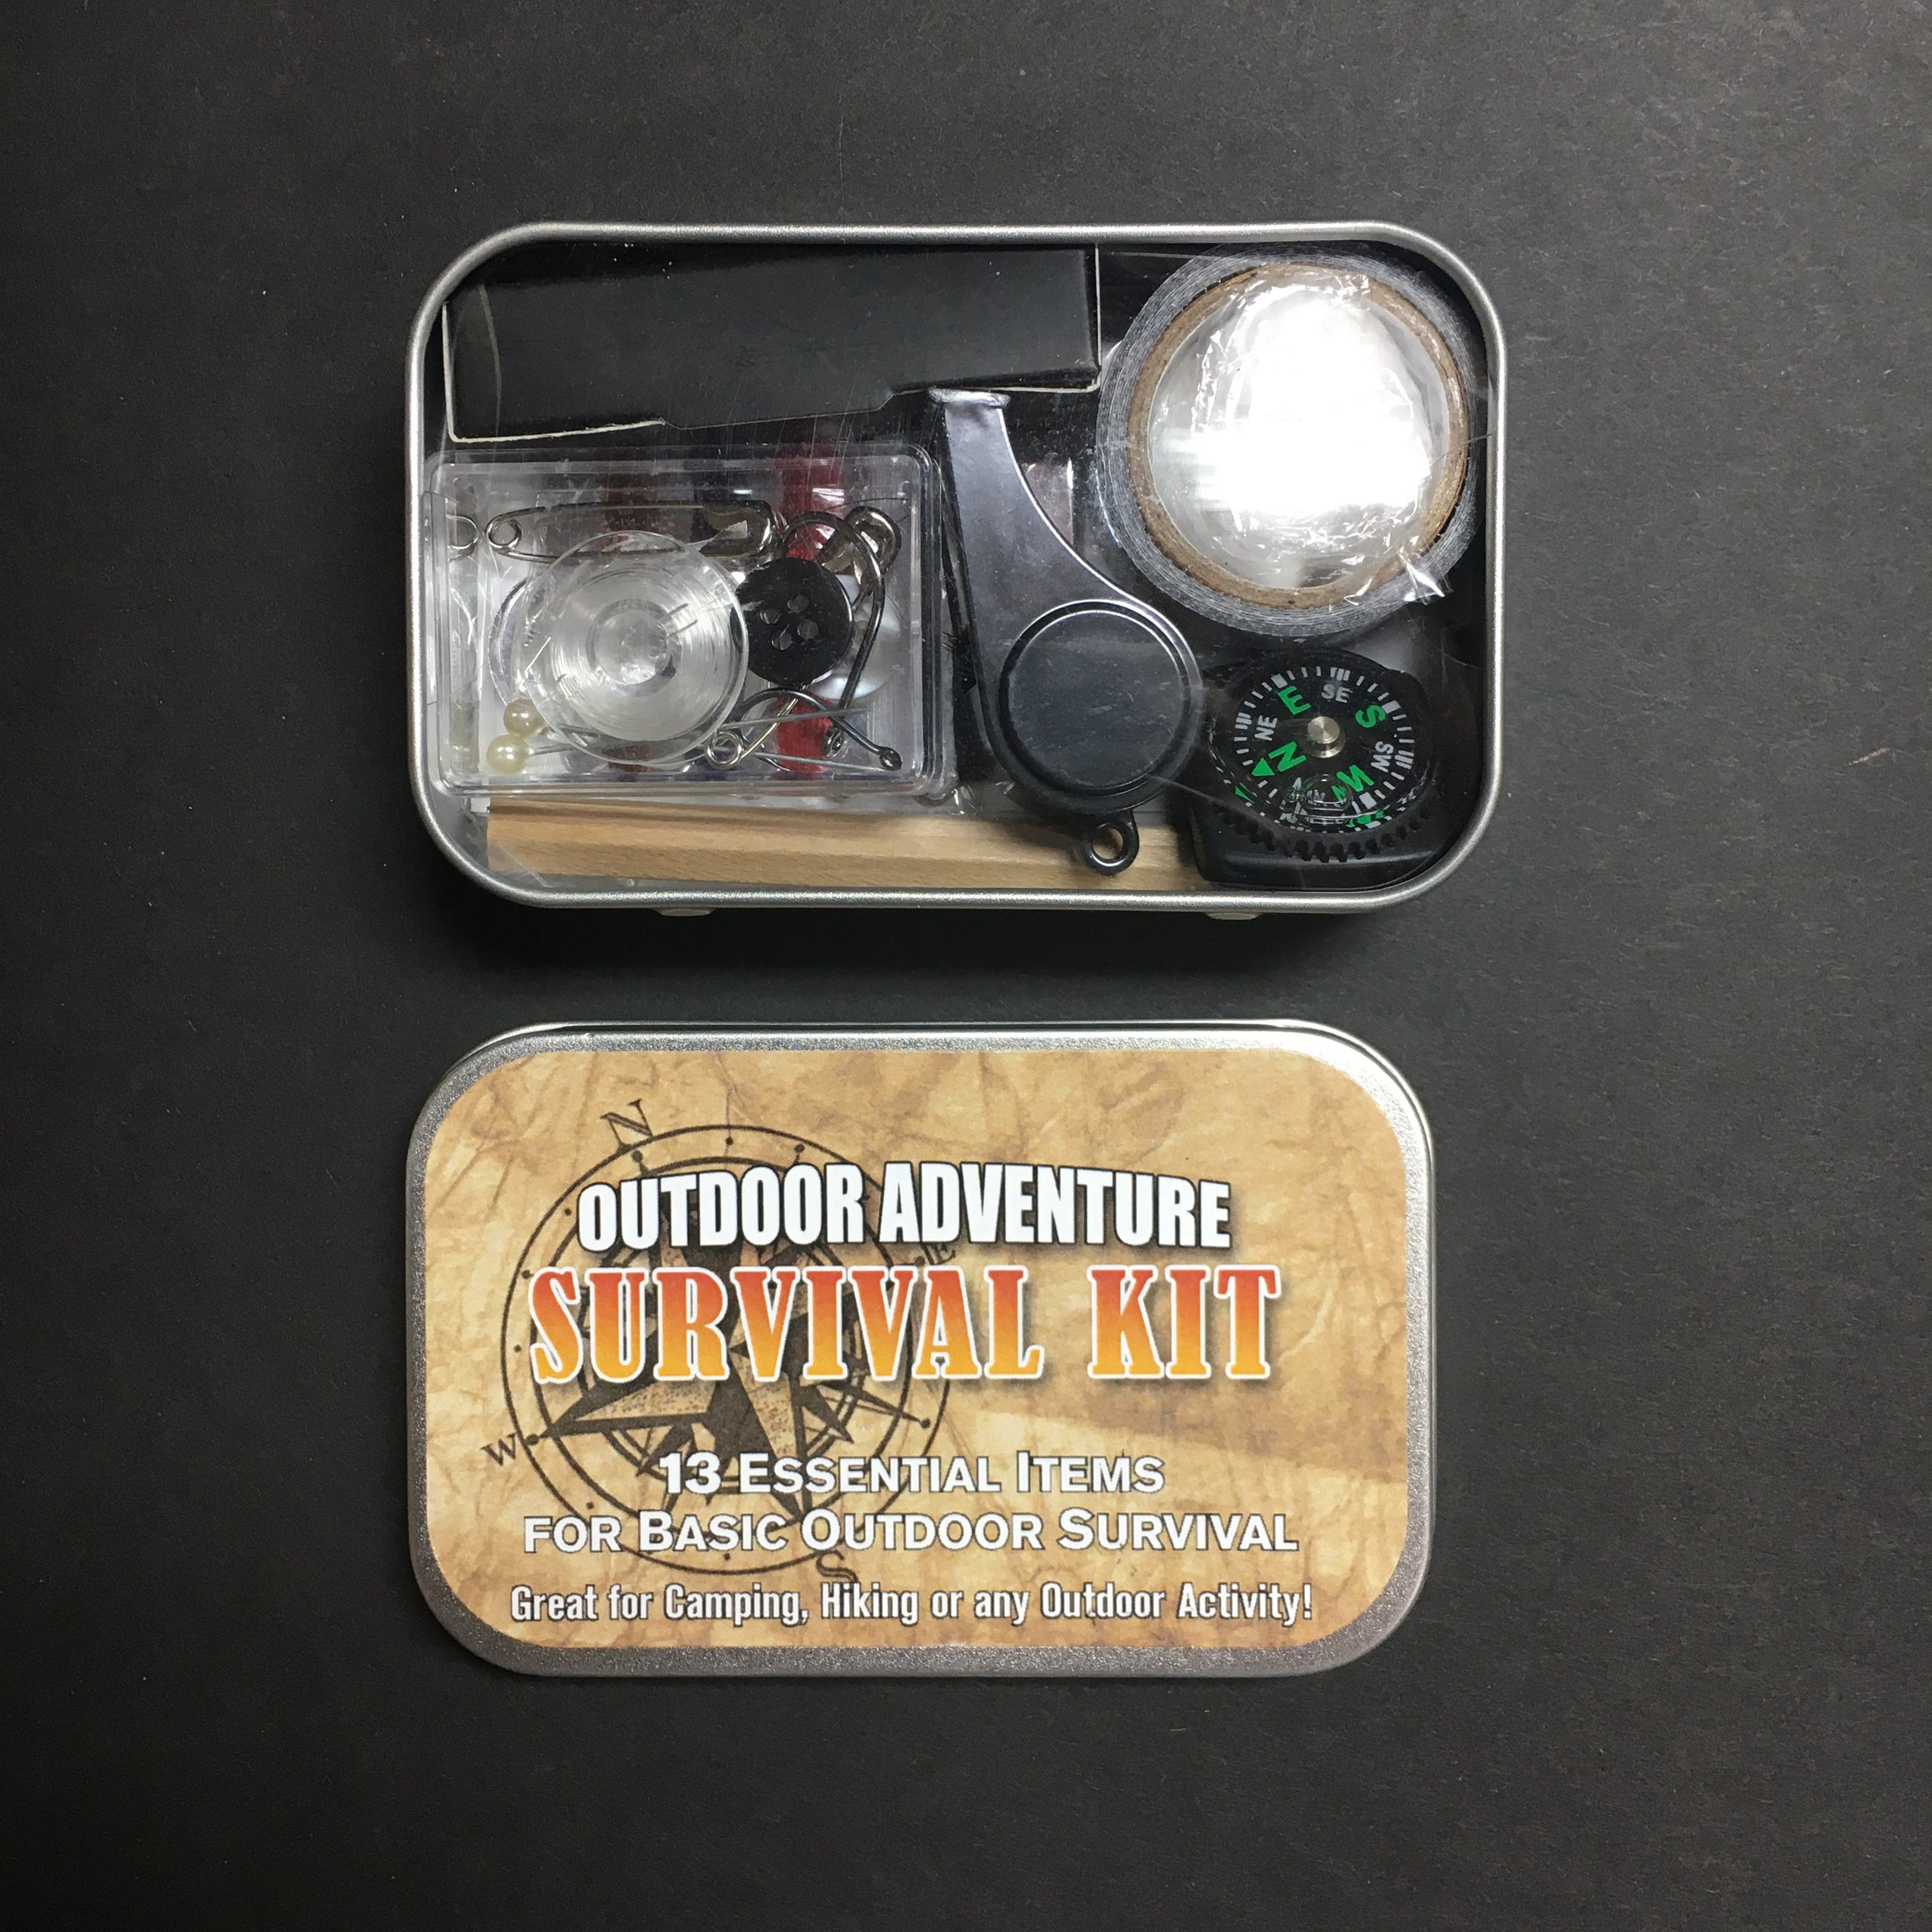 Adventure Kit, 23-Piece Survival Kit